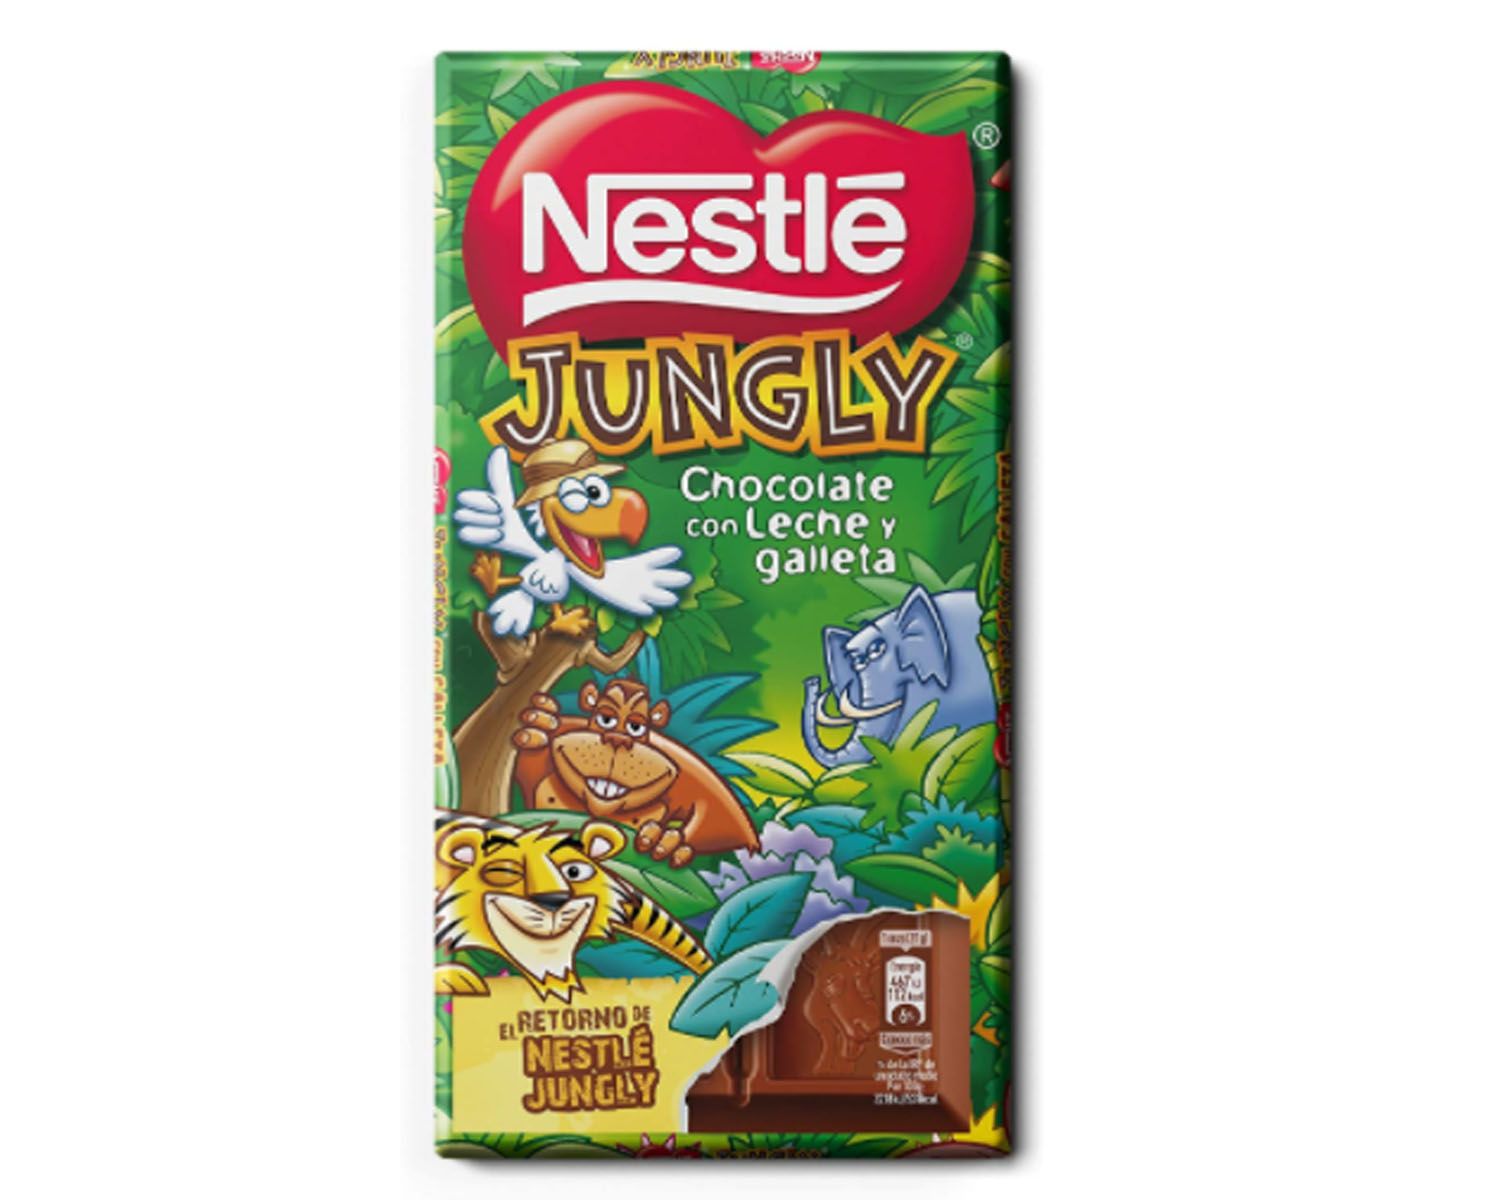 Una de las buscadas tabletas de chocolate de Nestlé Jungly